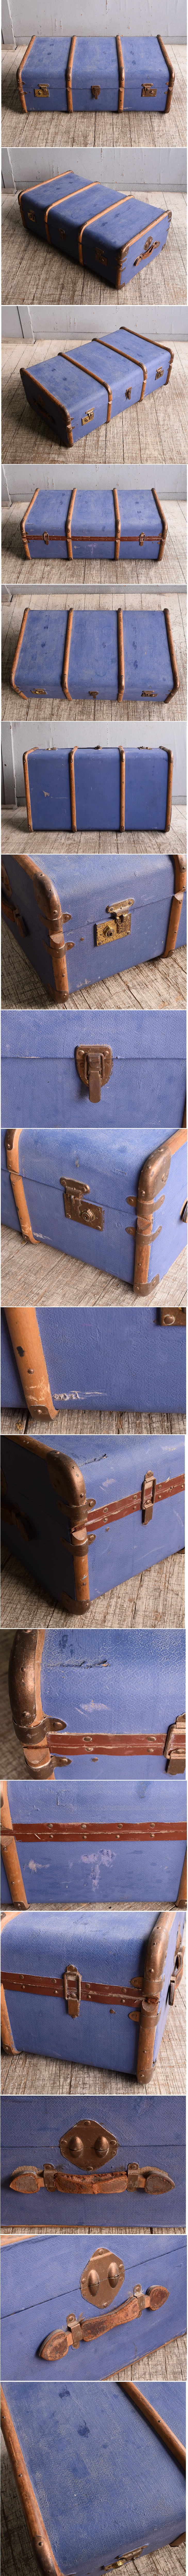 イギリス アンティーク スーツケース トランク ディスプレイ 旅行鞄 10502